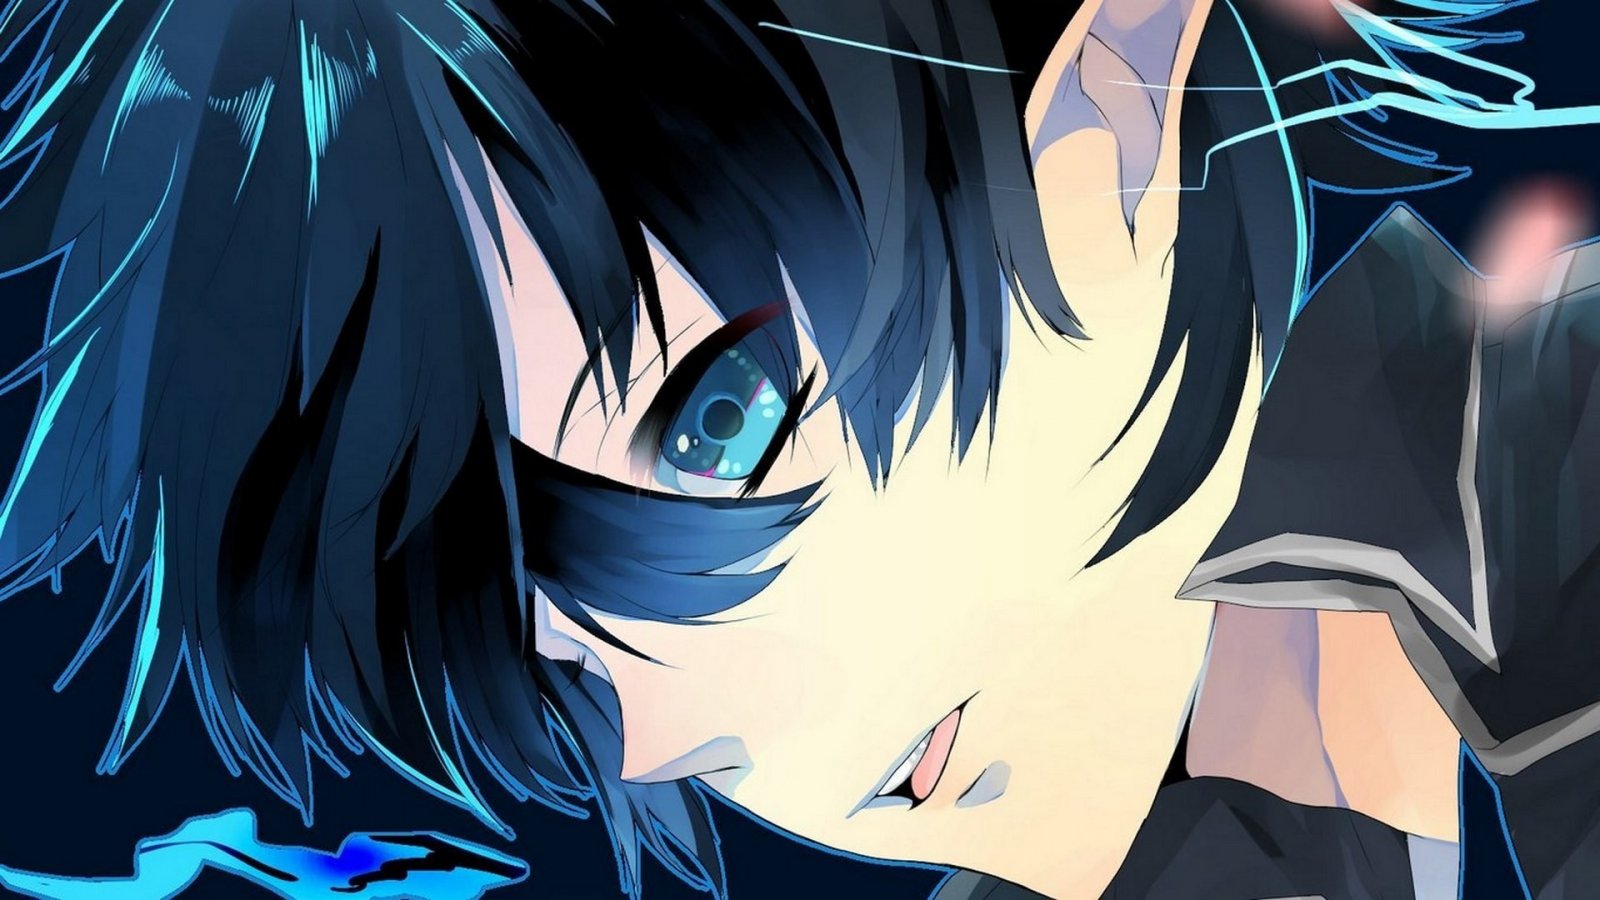 anime-guy-black-hair-blue-eyes-1920x1080-wallpaper406481.jpg